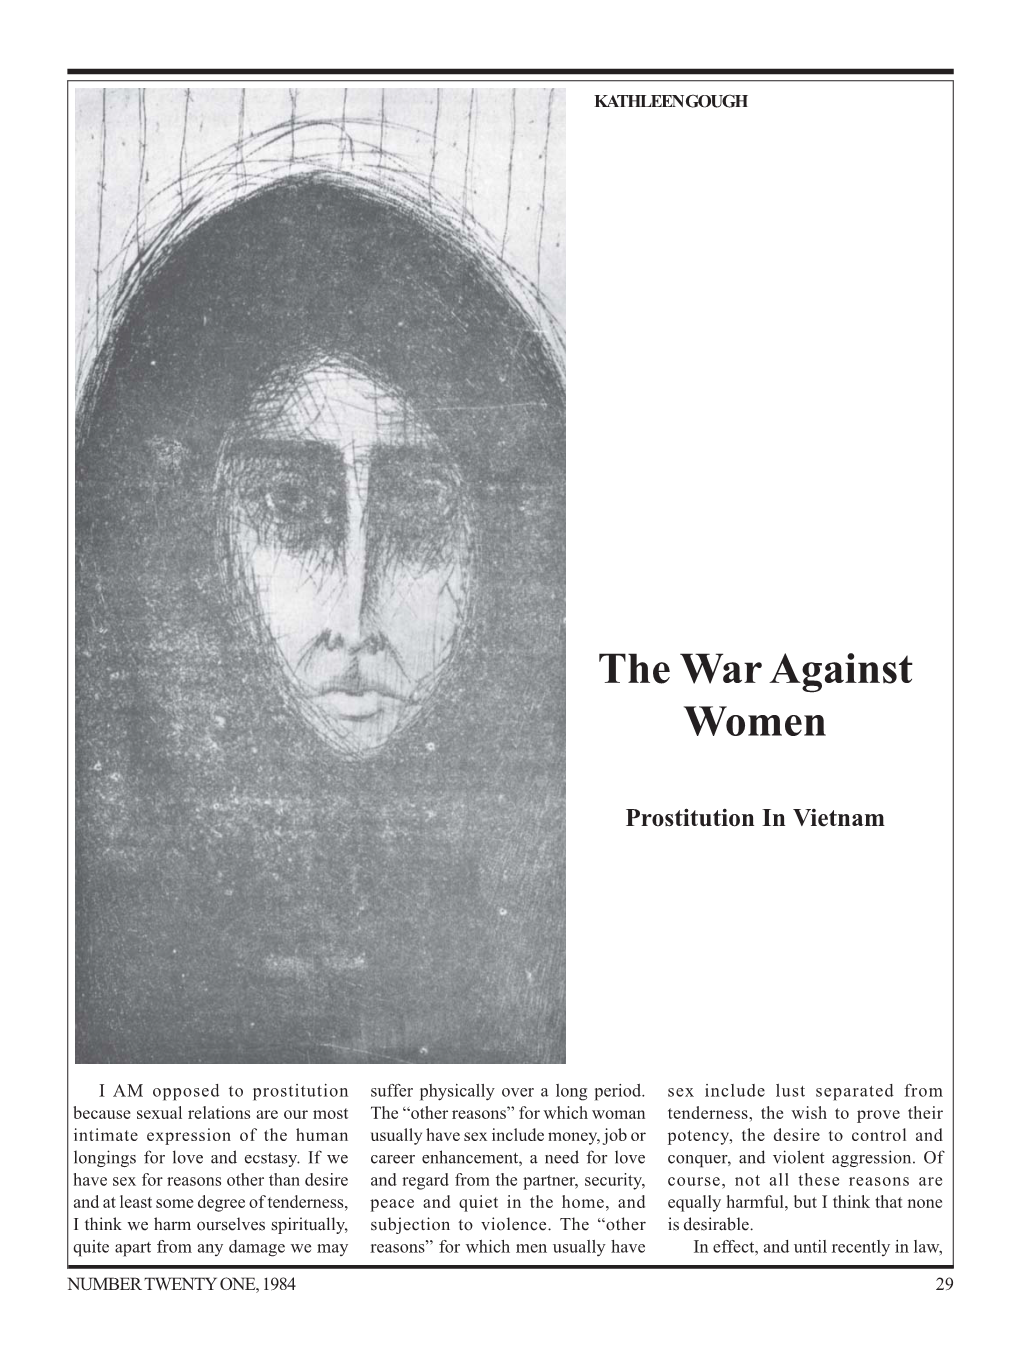 The War Against Women : Prostitution in Vietnam